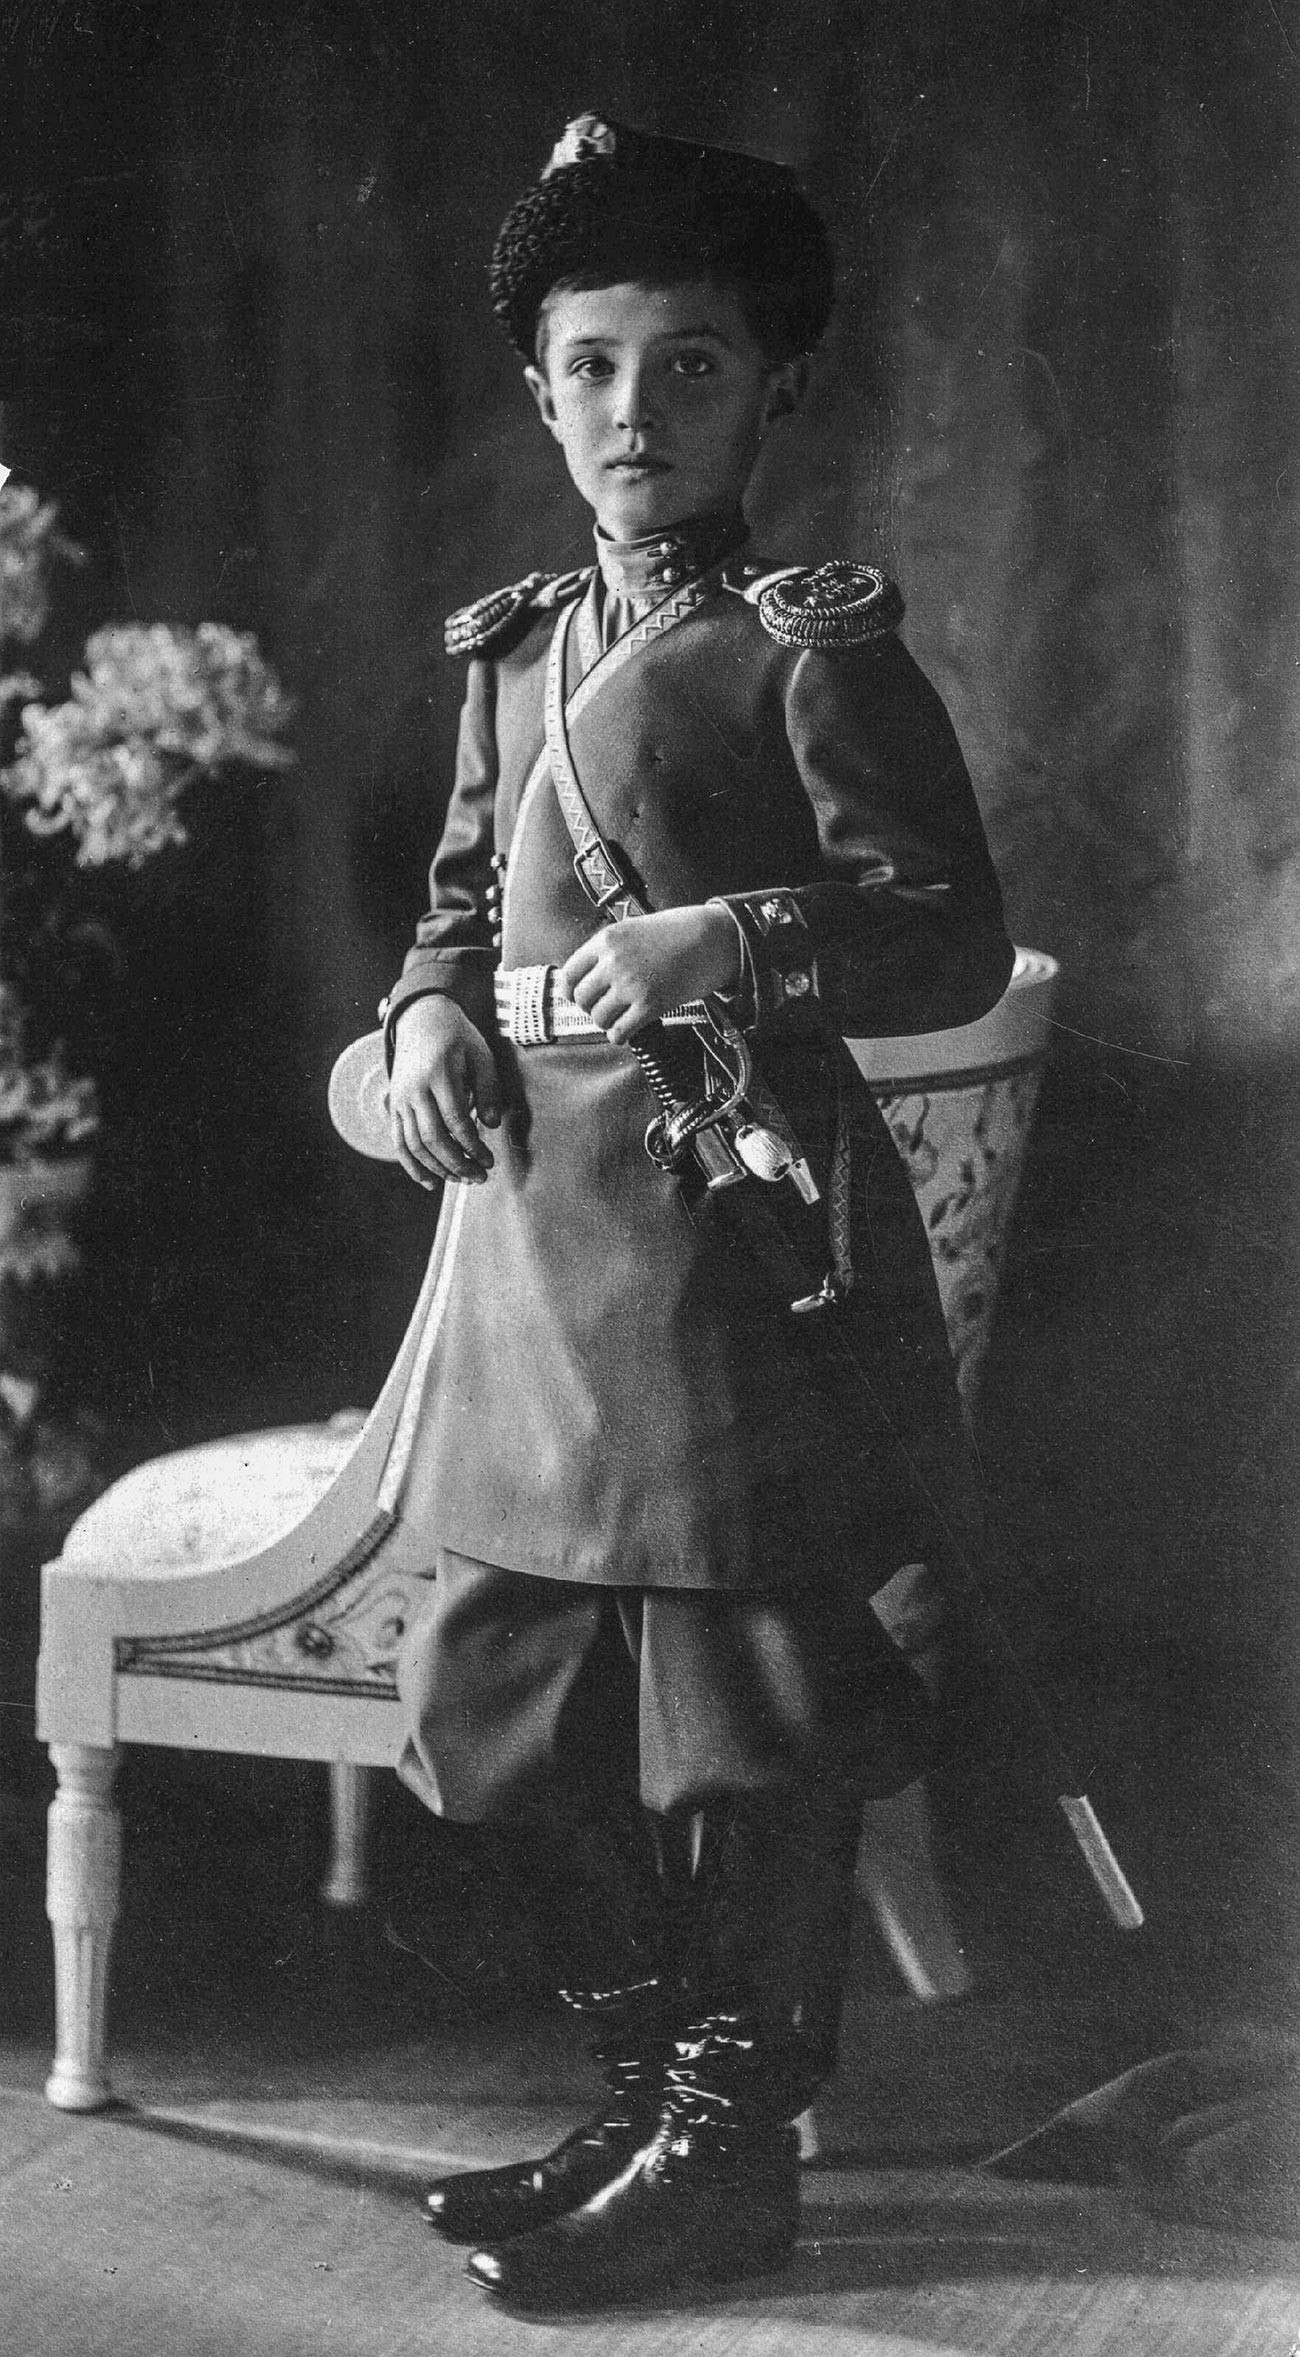 Prestolonaslednik carjevič Aleksej Nikolajevič (1904-1918)